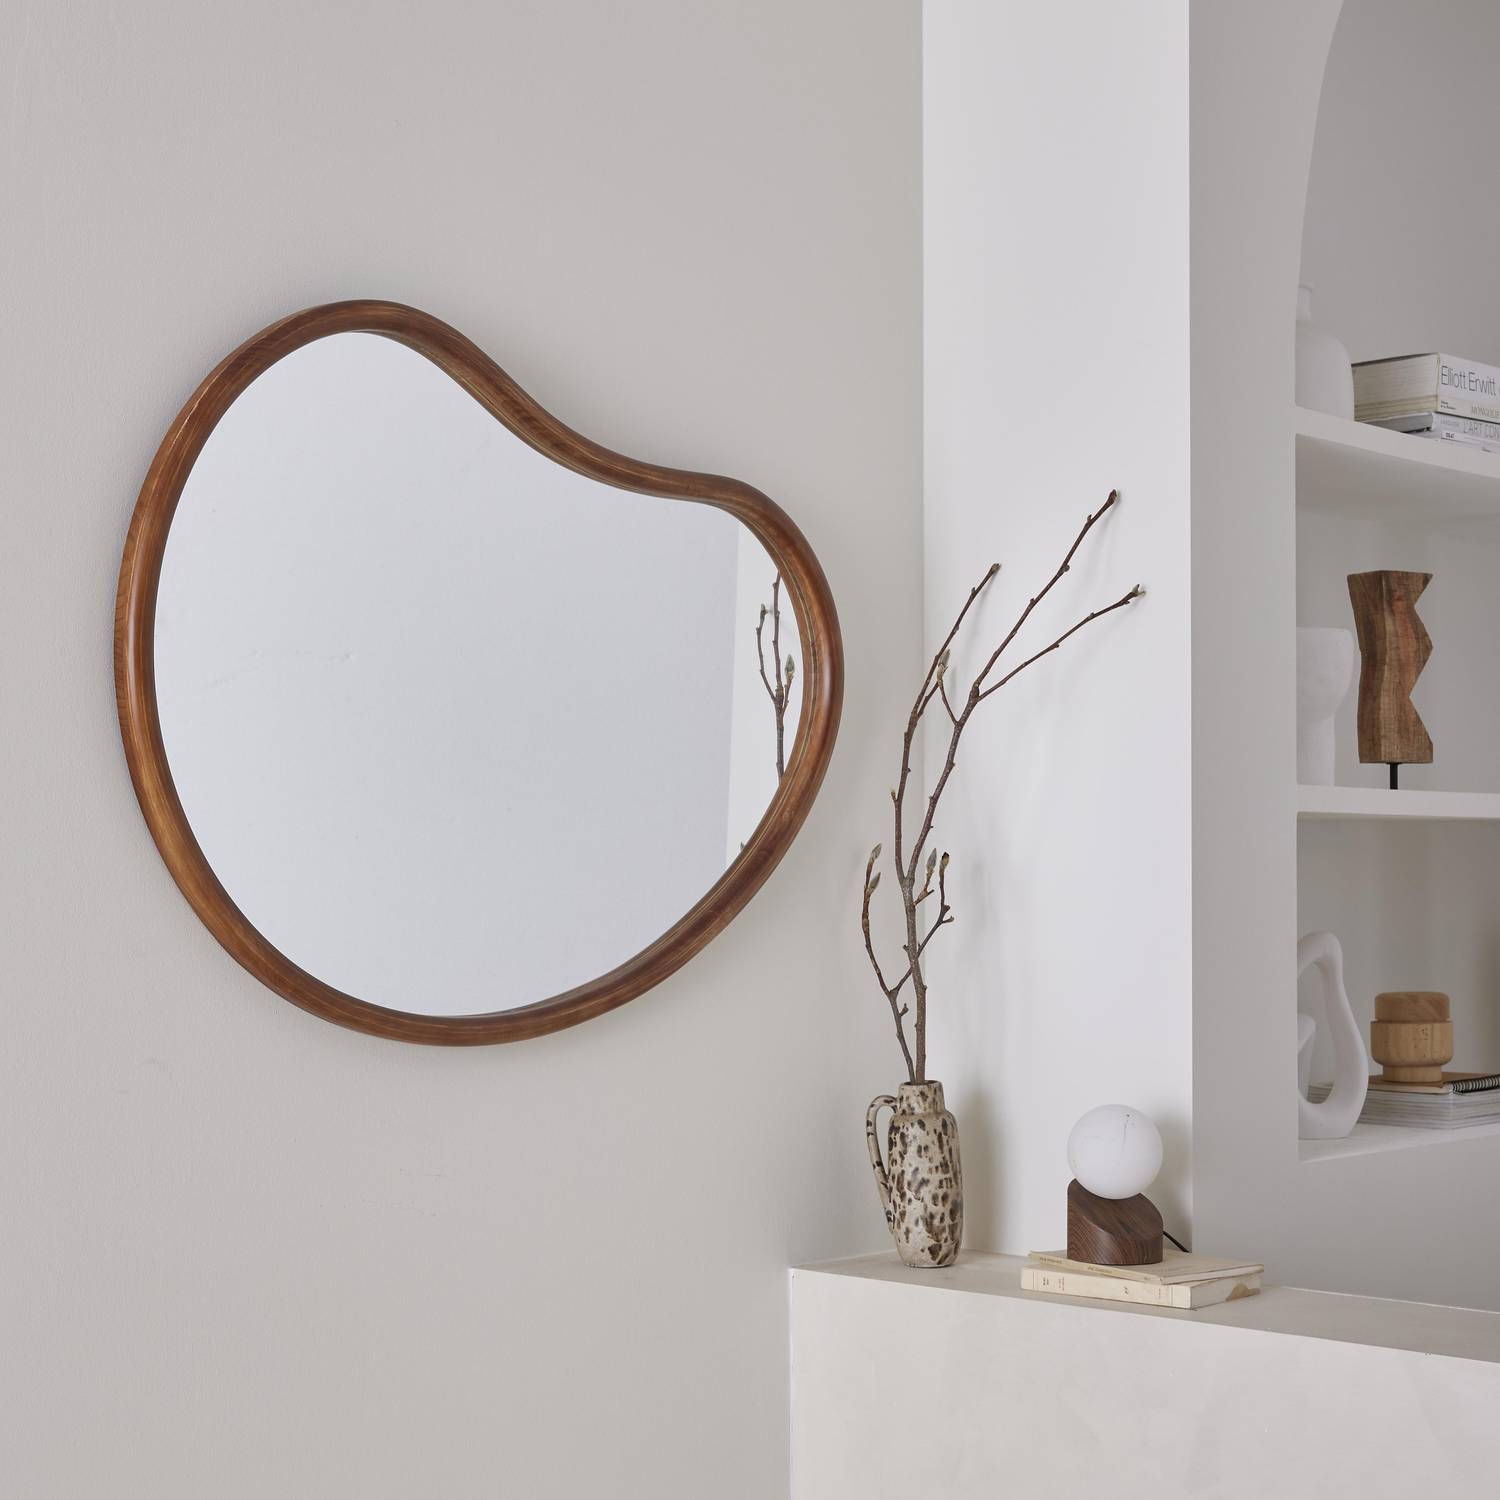 Organischer Spiegel aus Tannenholz 95cm, 3cm dick, nussbaumfarben, für Eingang, Schlafzimmer oder Badezimmer - Jacob Photo2